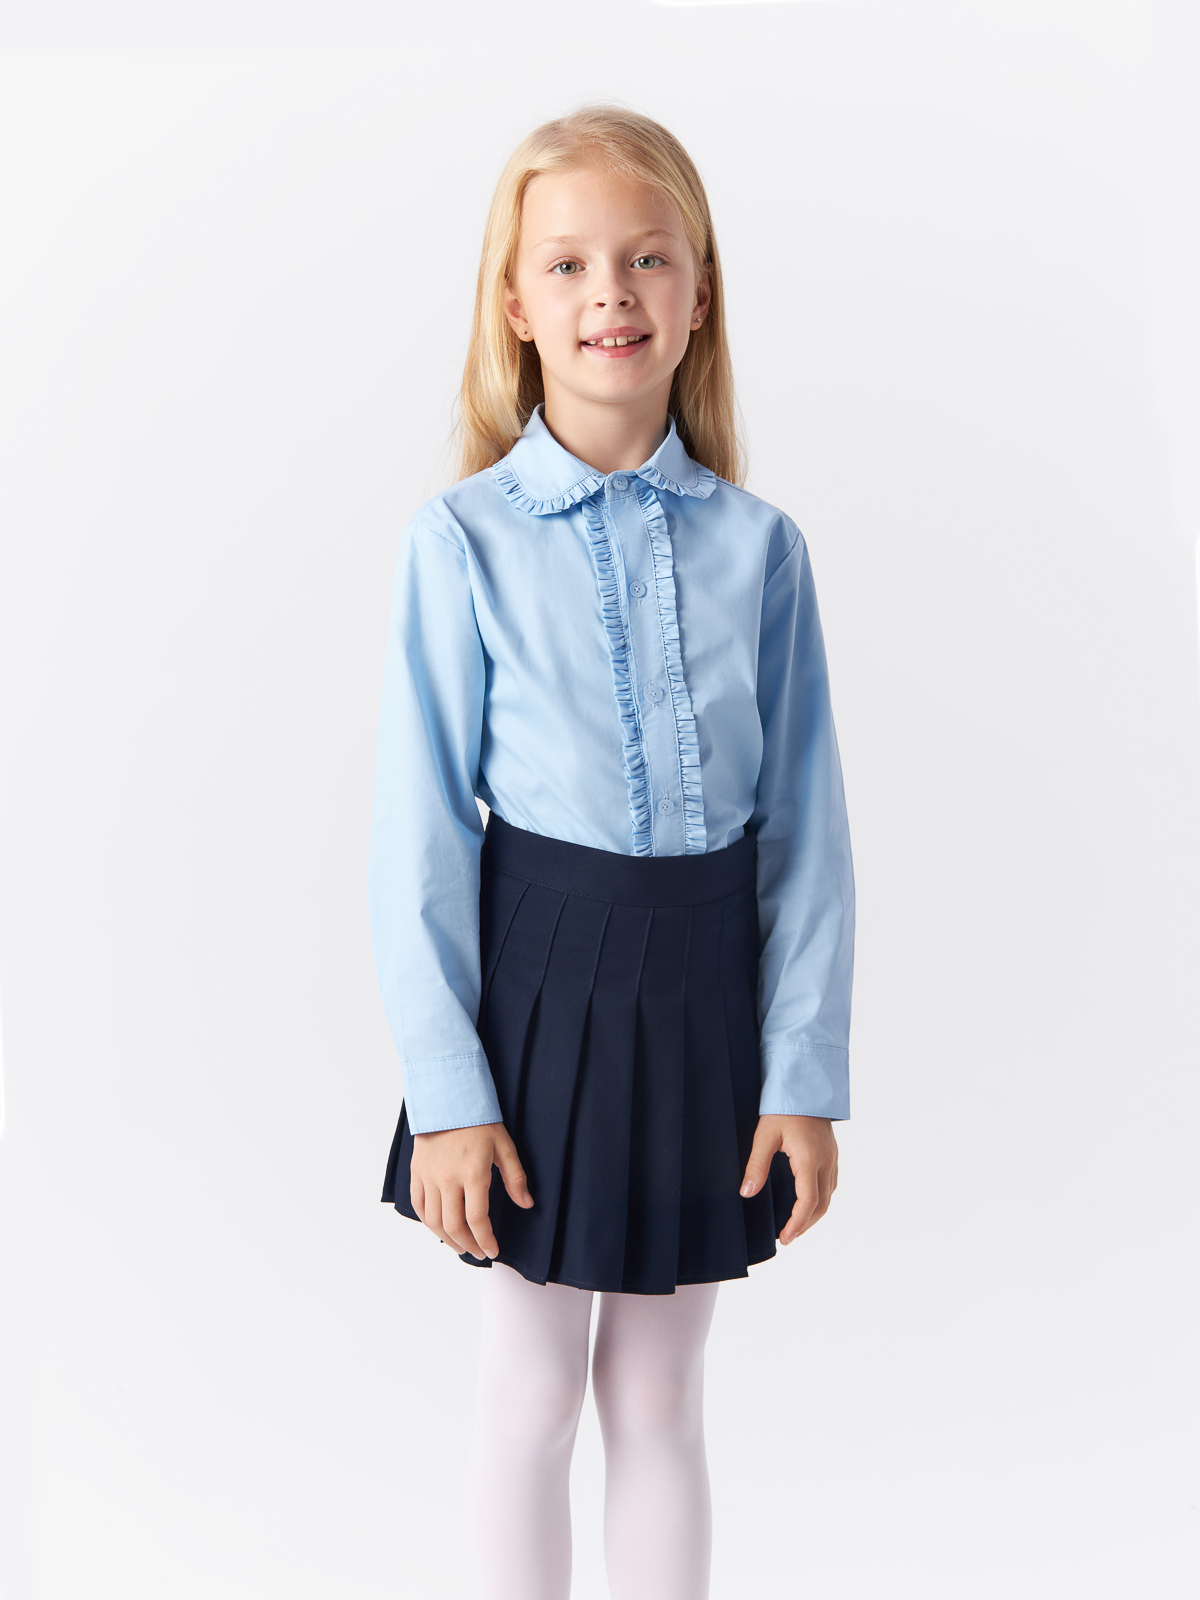 Блузка Yiwu Xflot Supply Chain детская, BS-2blue, размер 150 см блузка классическая с принтом сердечко белая button blue 170